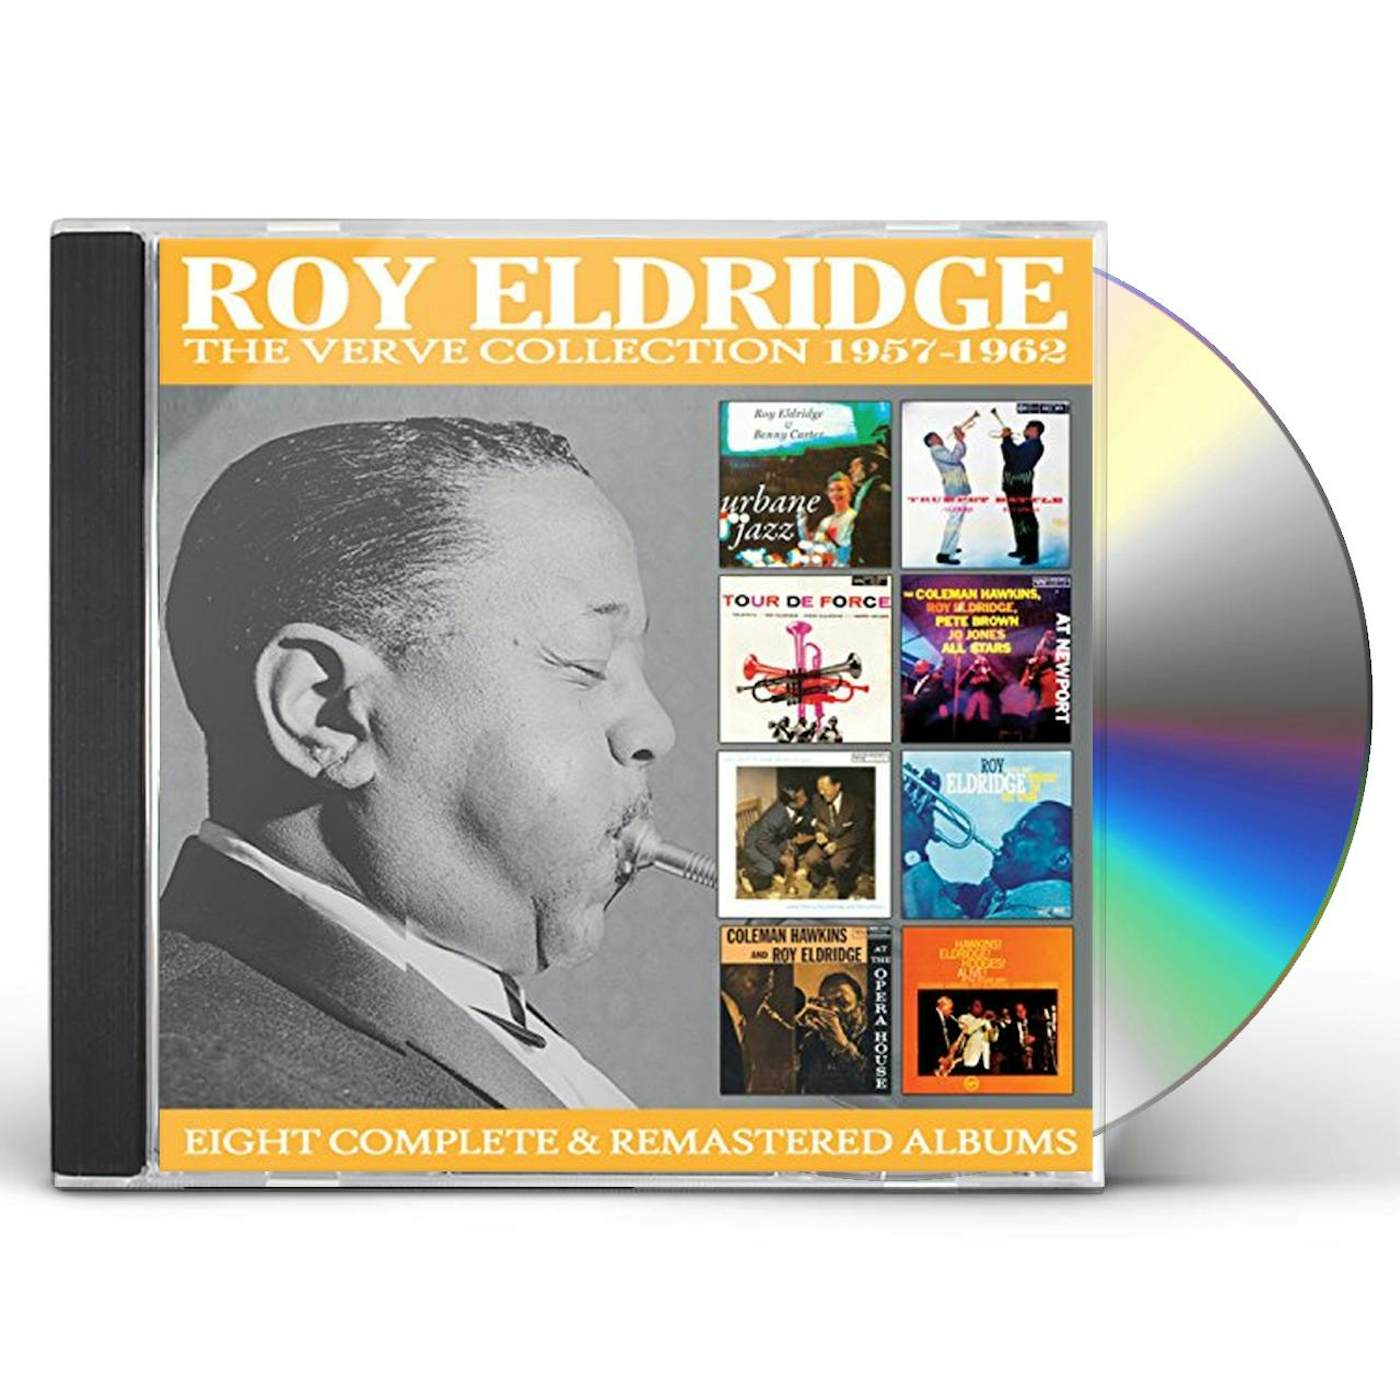 Roy Eldridge VERVE COLLECTION CD